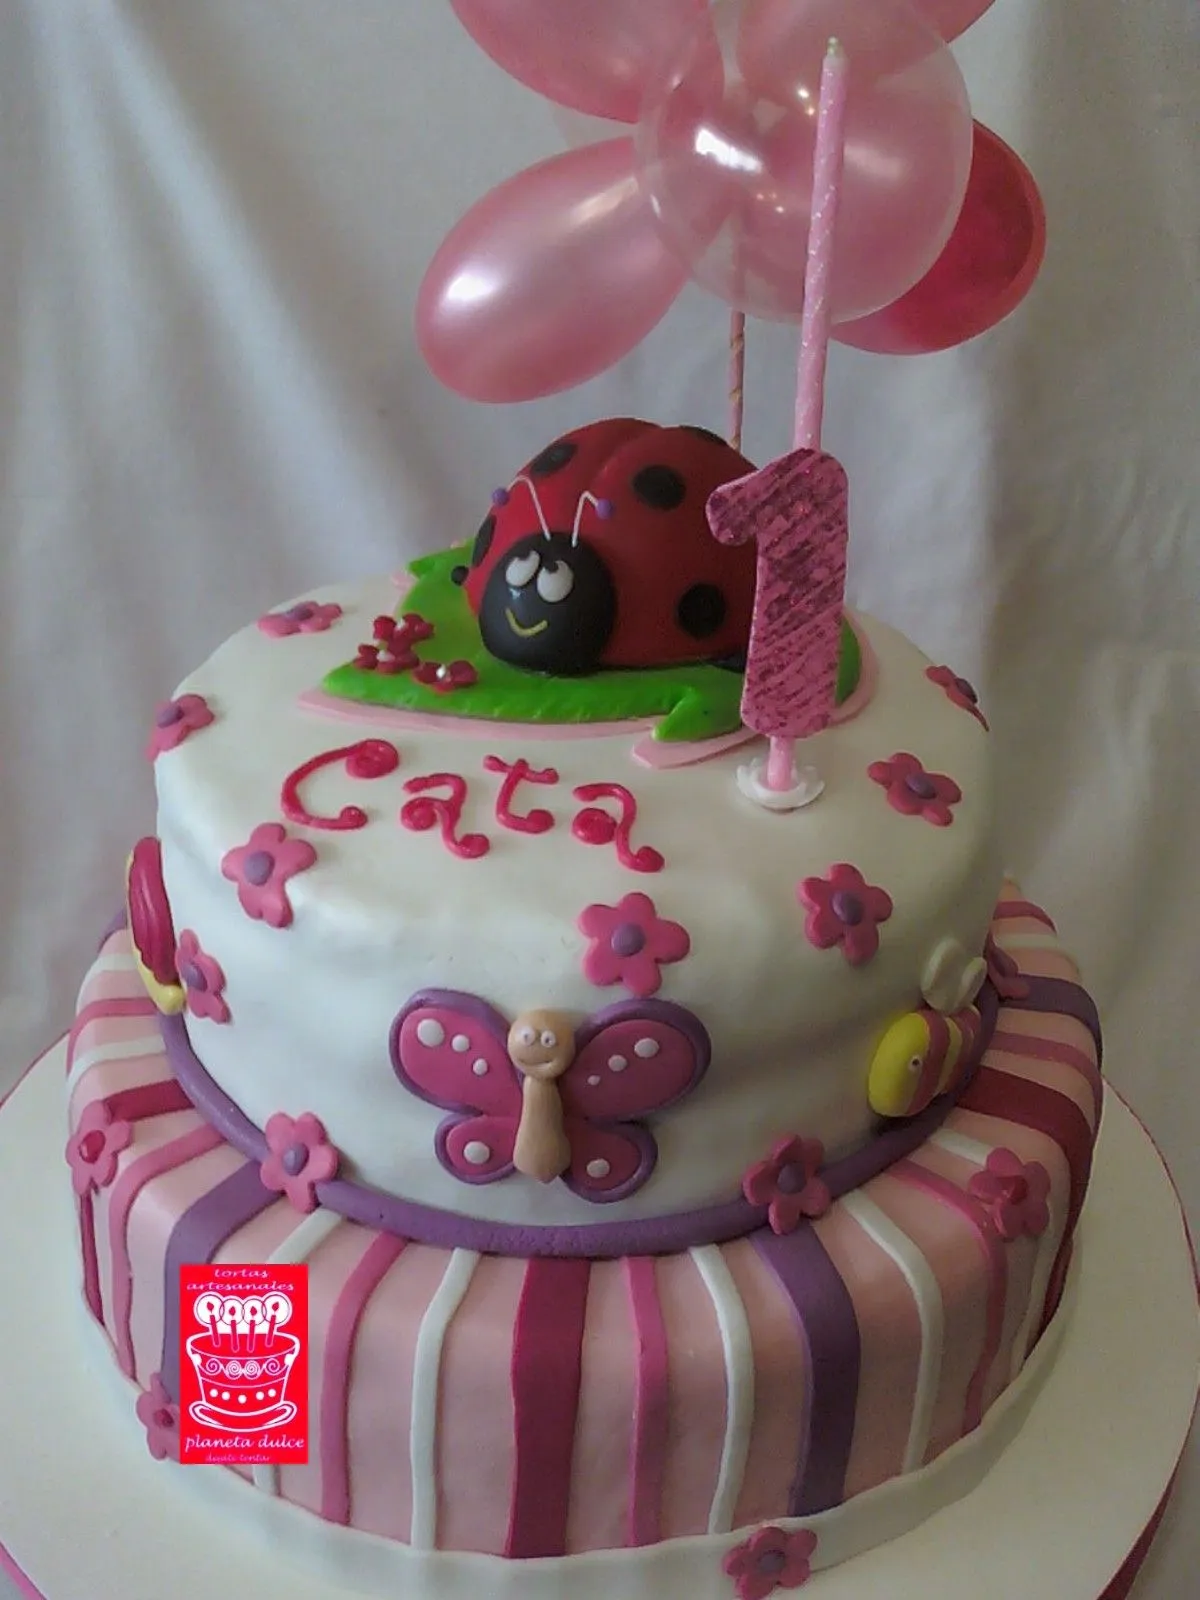 Imagenes tortas para niñas - Imagui